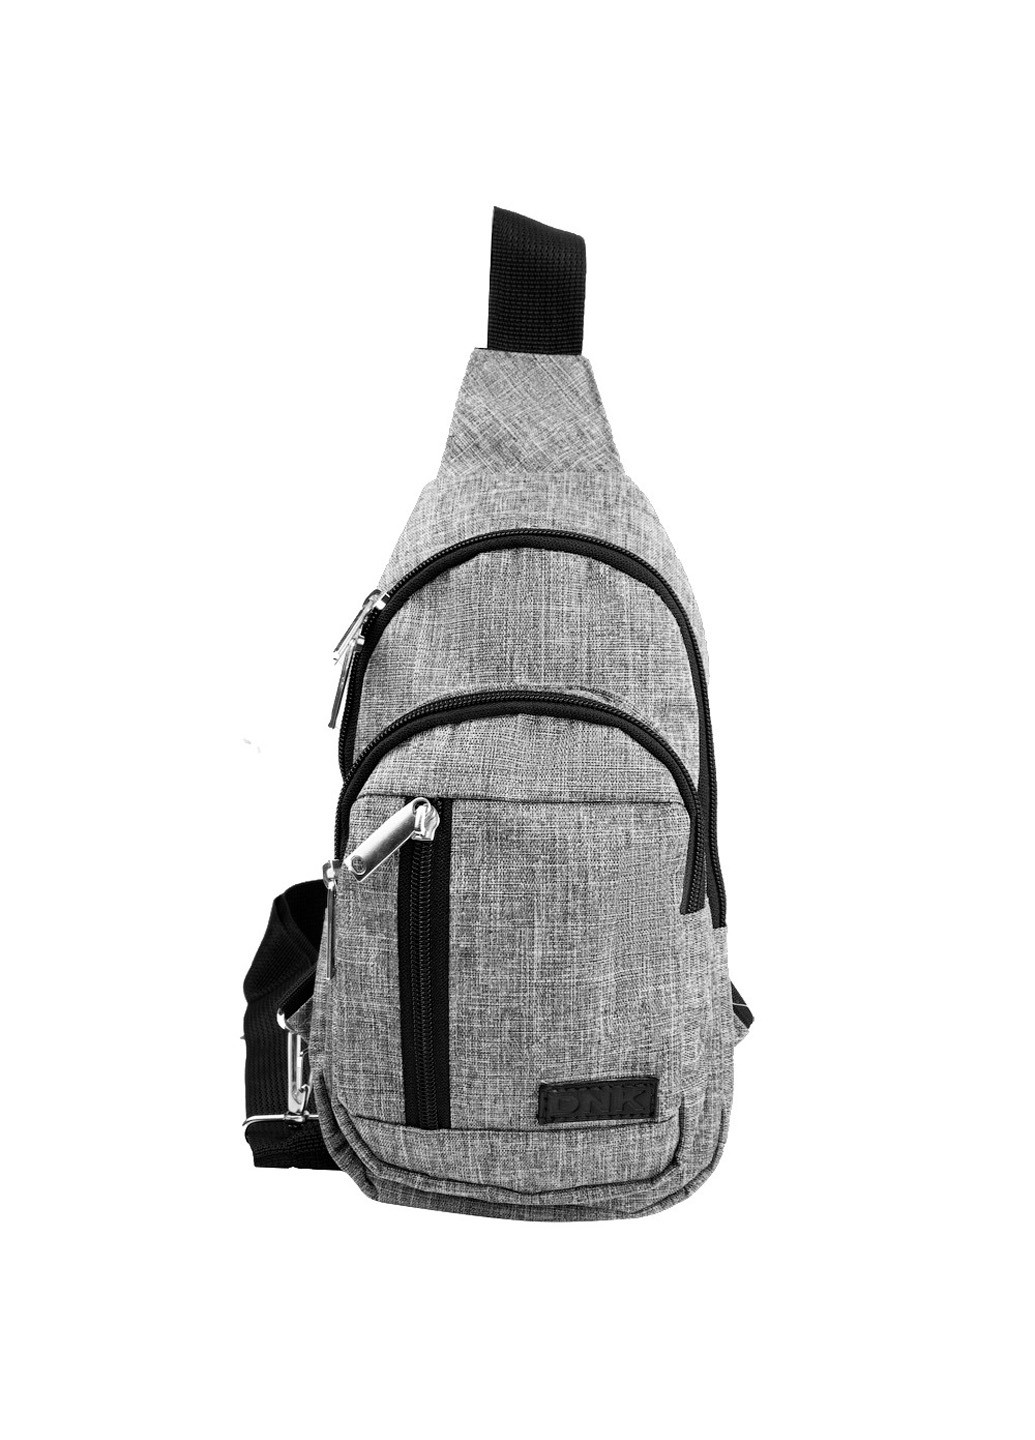 Мужская сумка-рюкзак 28х14х4 см DNK Leather (195706113)